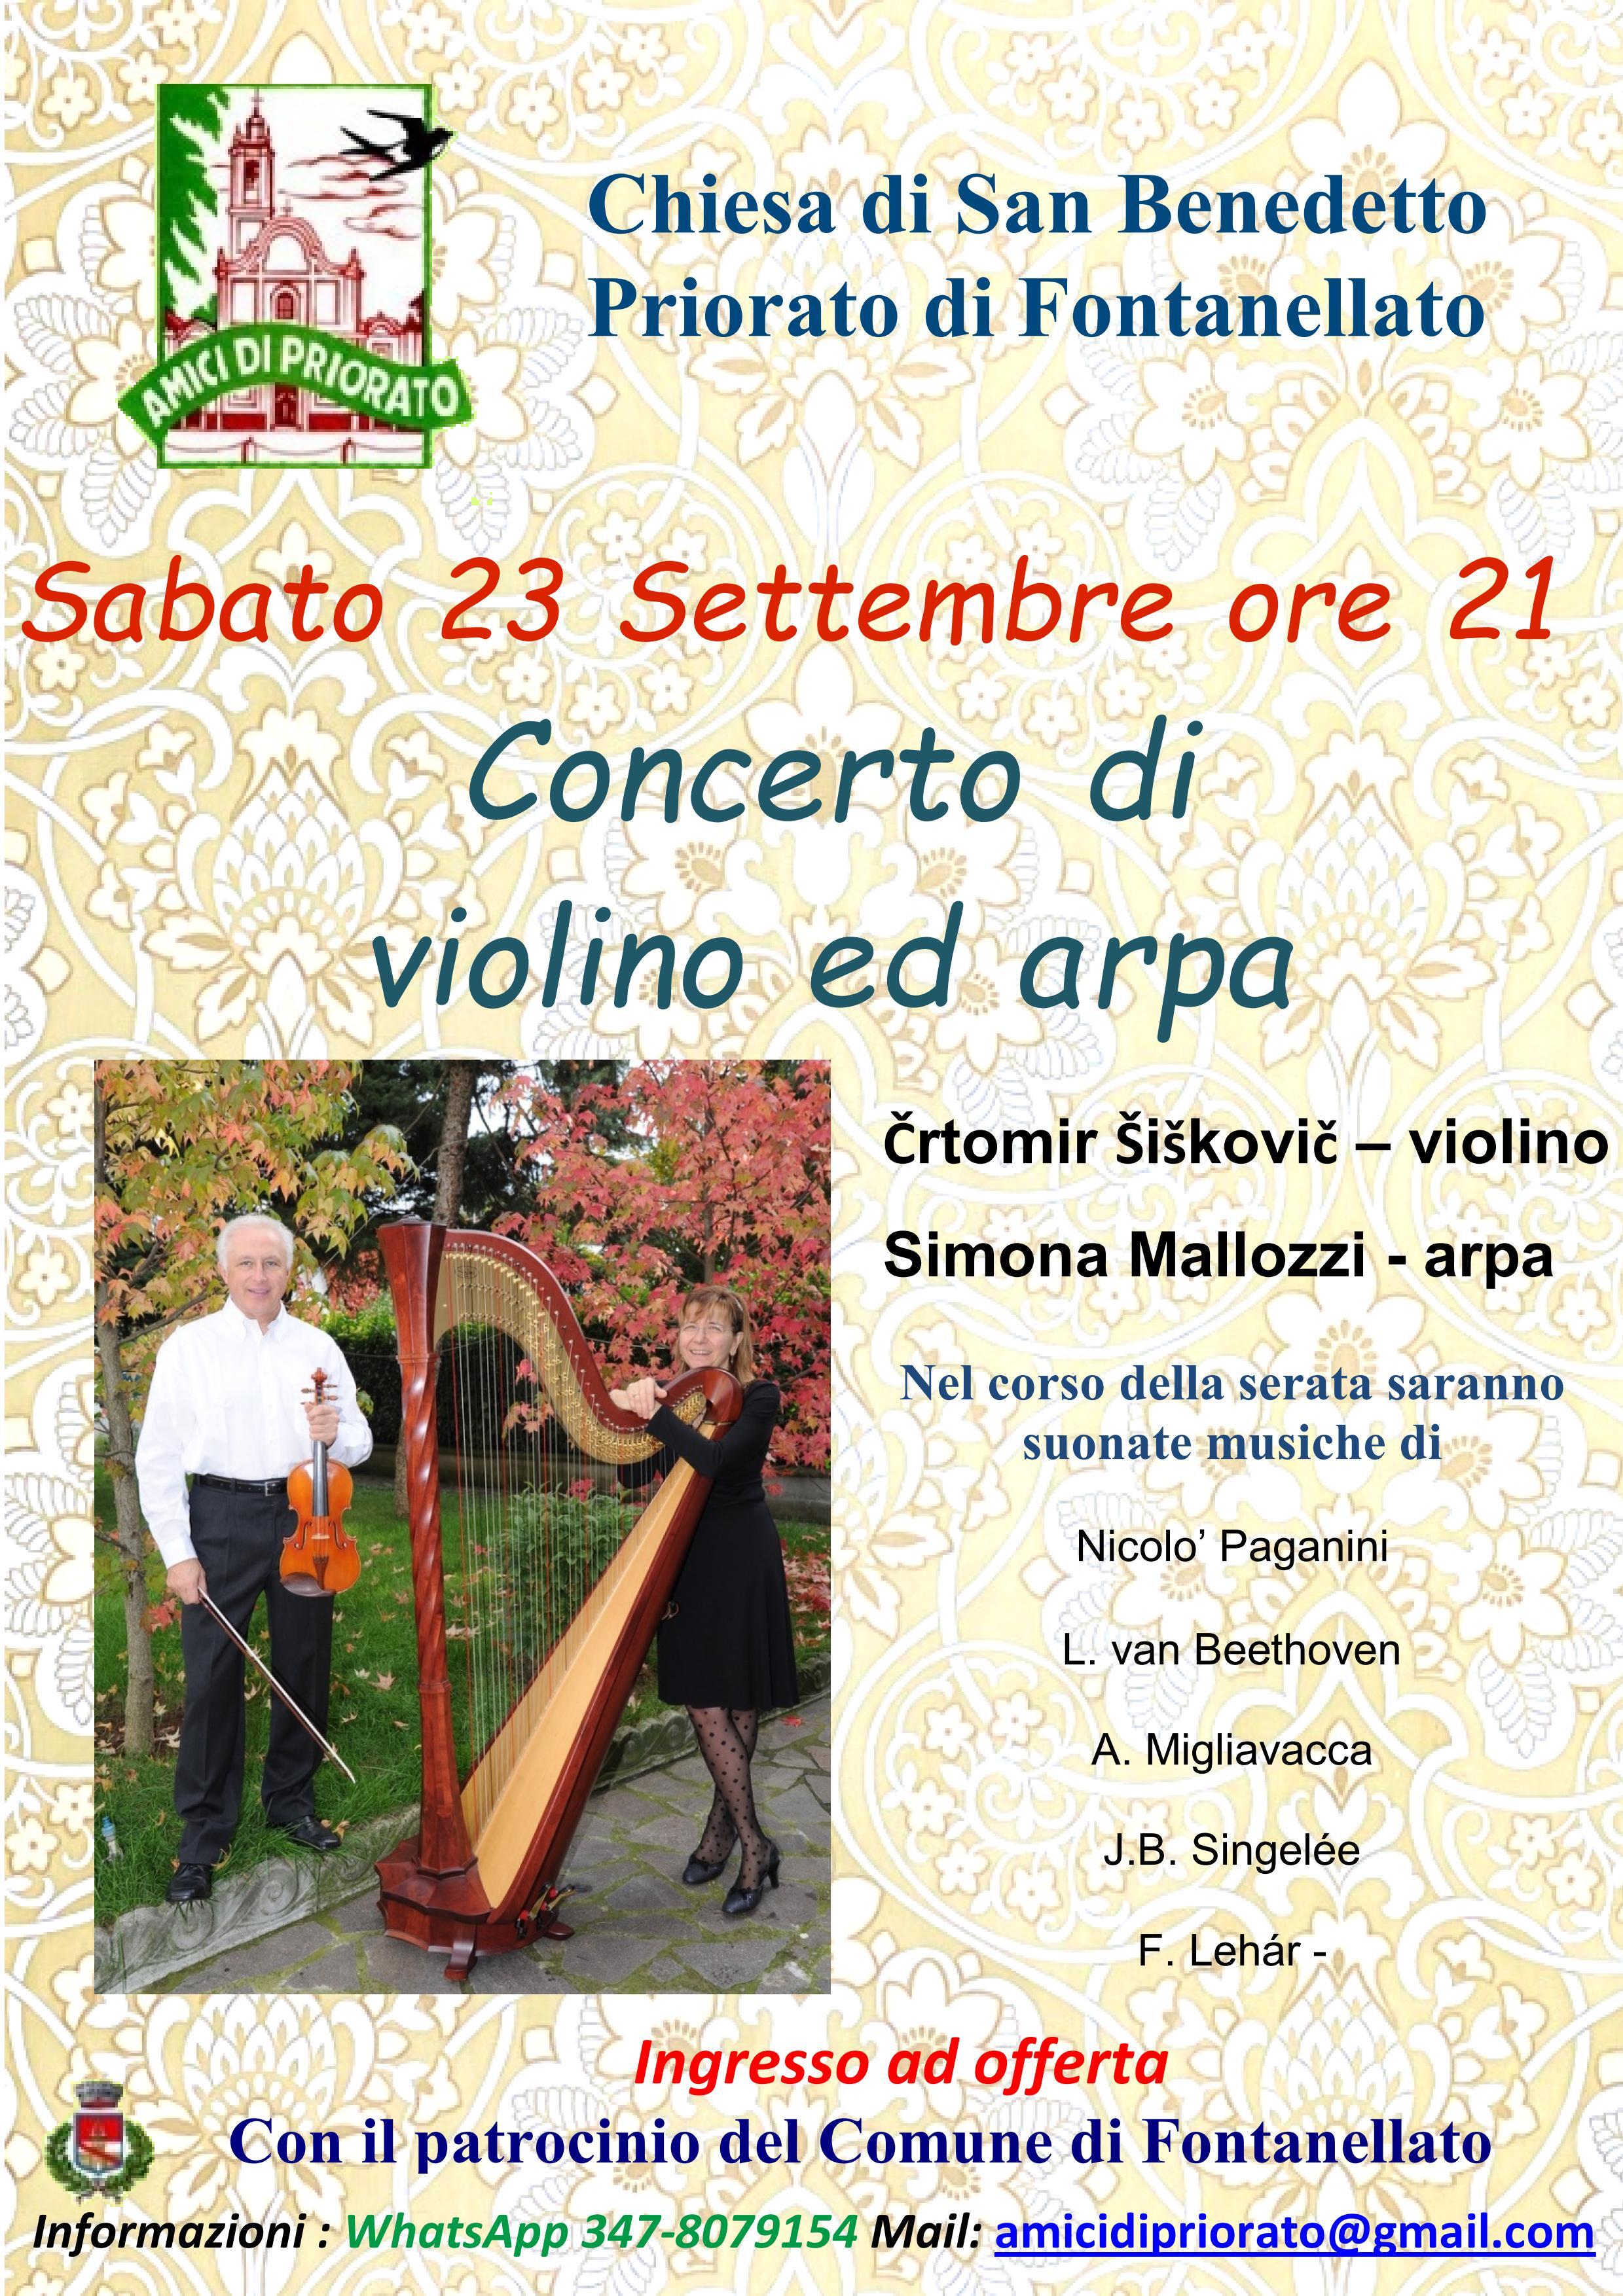 Concerto di violino e arpa  nella chiesa di San Benedetto in Priorato